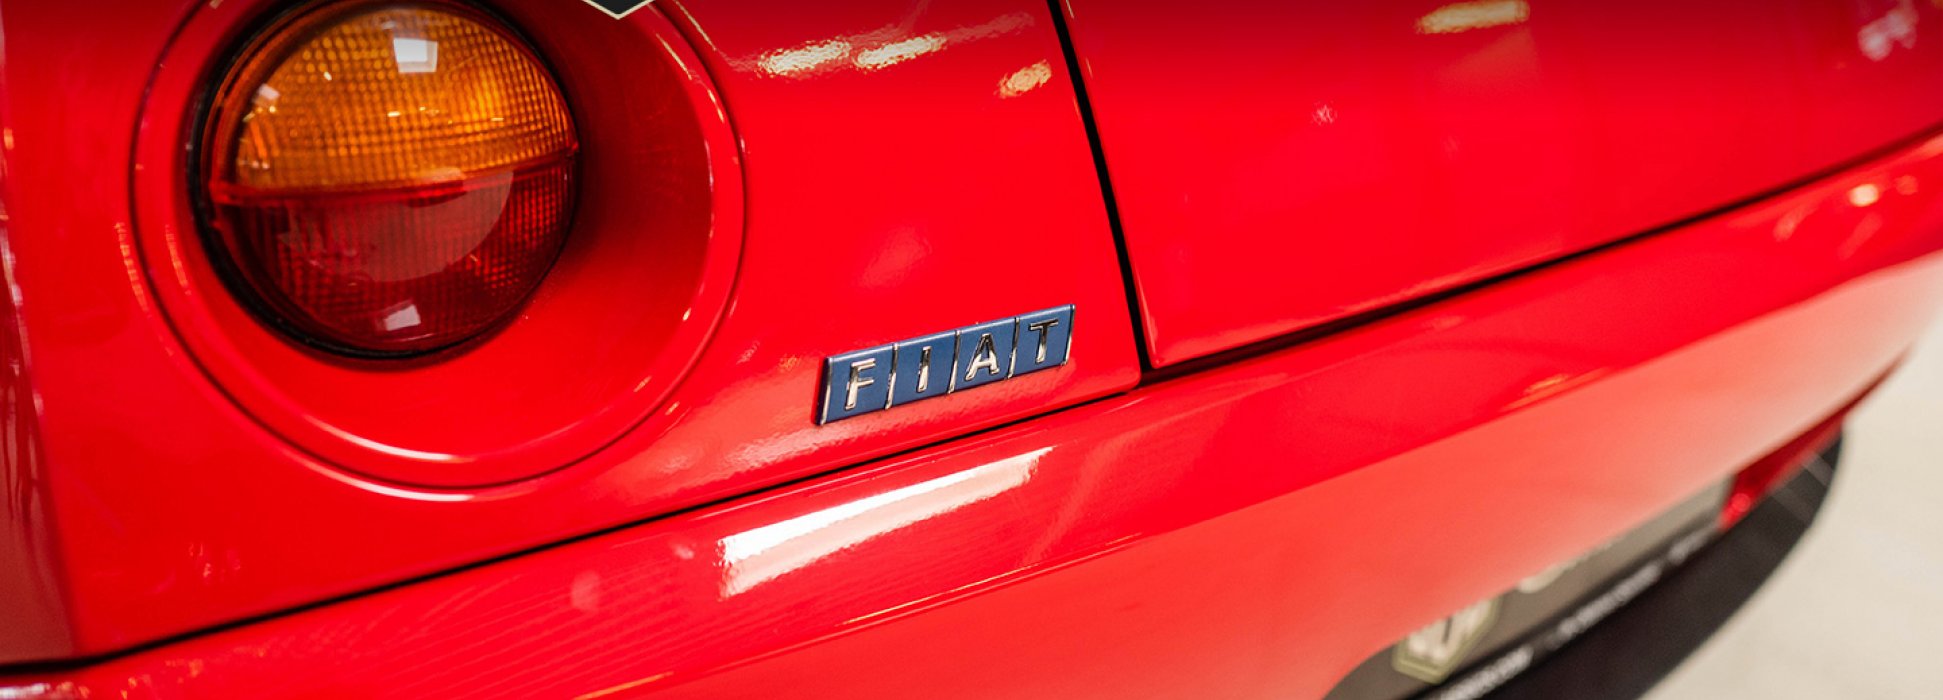 Fiat Coupé 2000 10